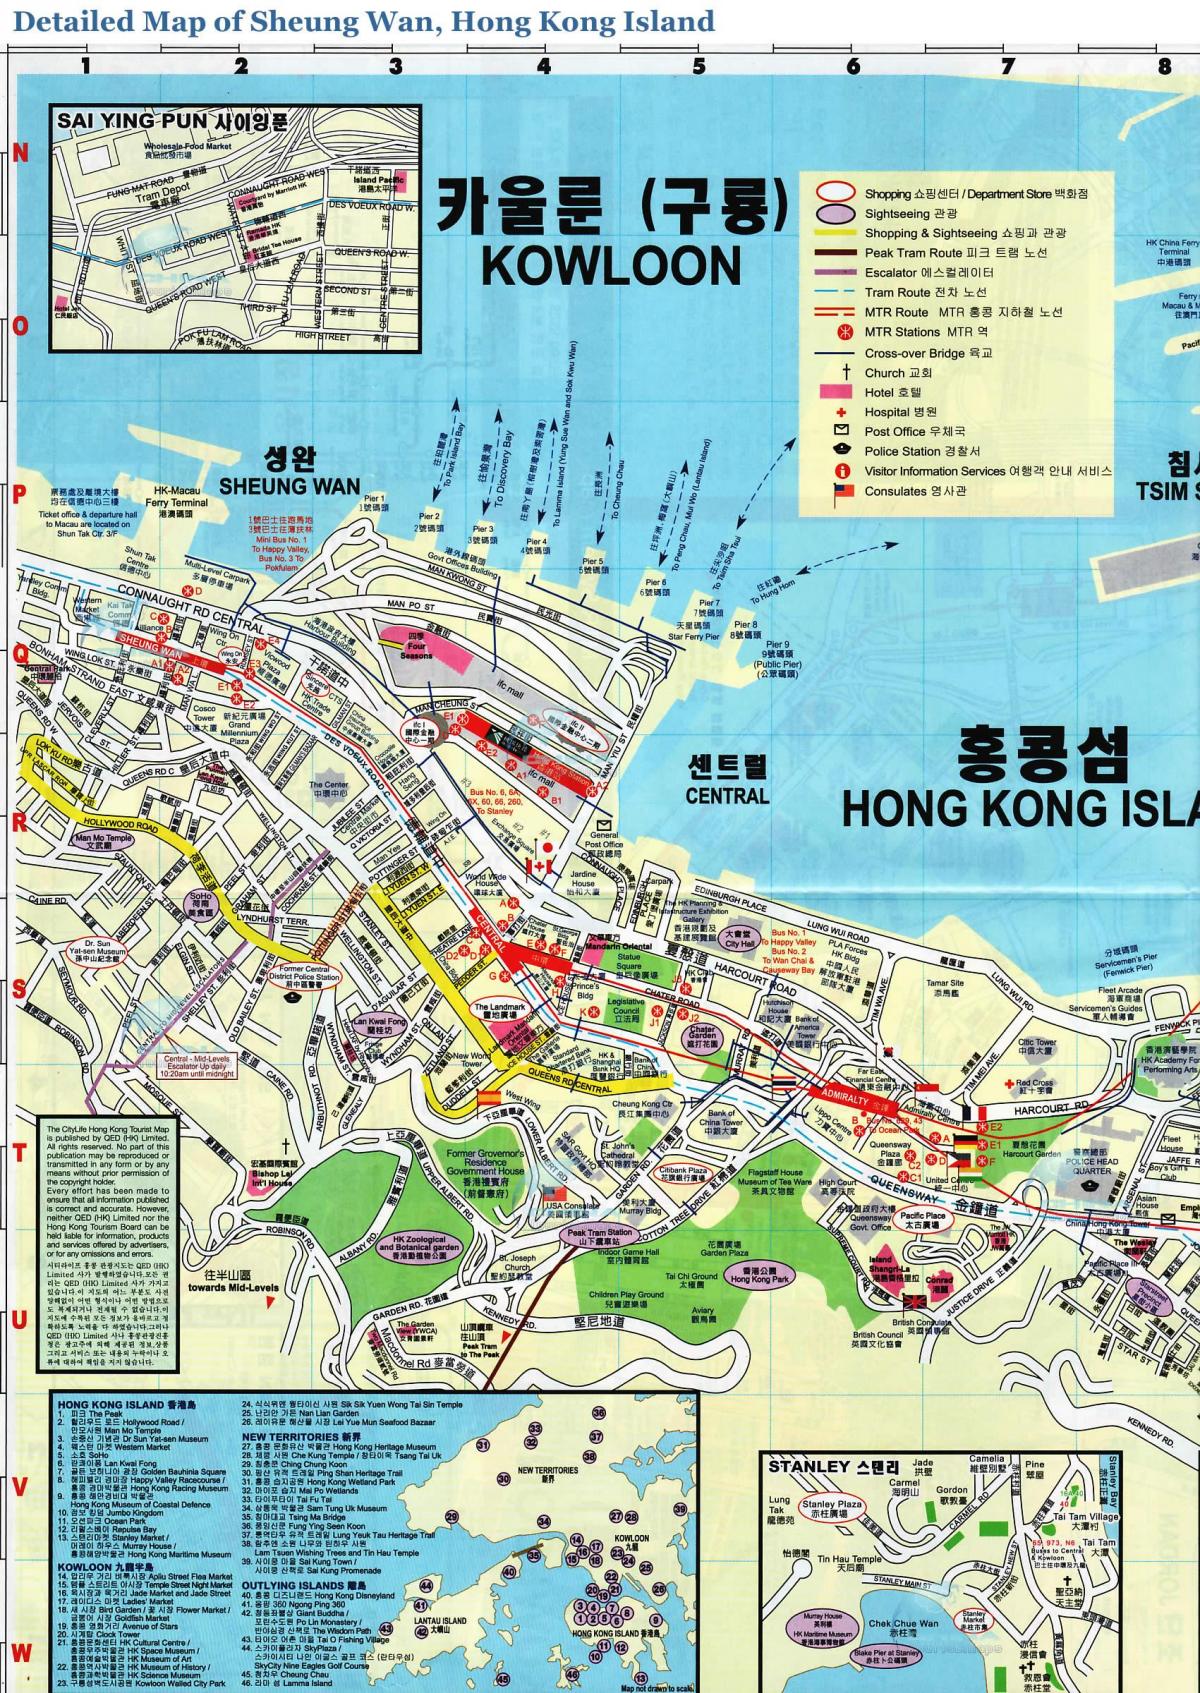 χάρτης της Sheung Wan Χονγκ Κονγκ